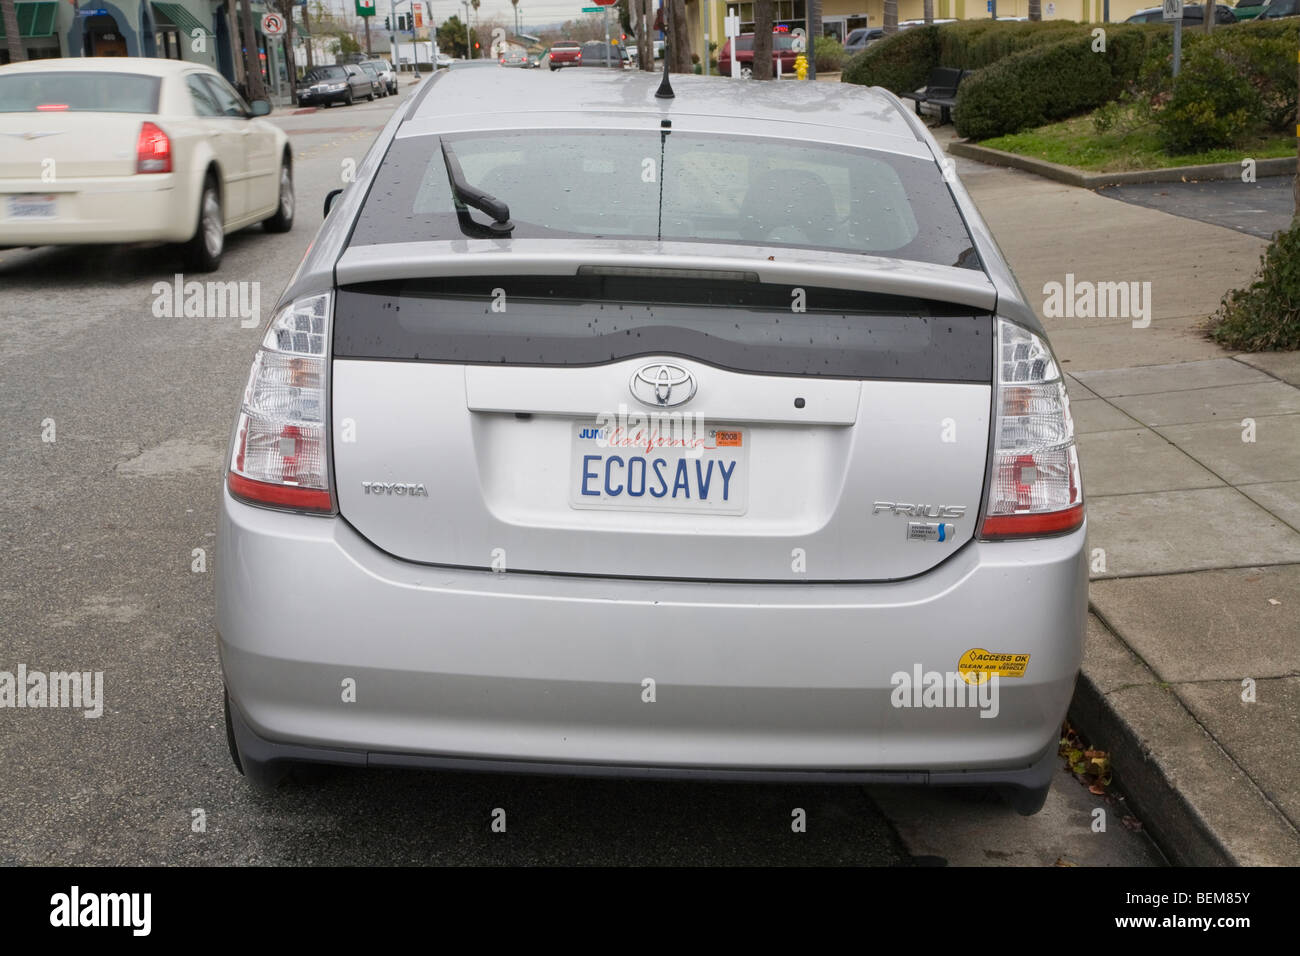 Rückansicht des Toyota Prius mit einem "ECOSAVY" (Eco-versierte Kfz-Kennzeichen und eine saubere Luft-Fahrzeug-Aufkleber. Stockfoto